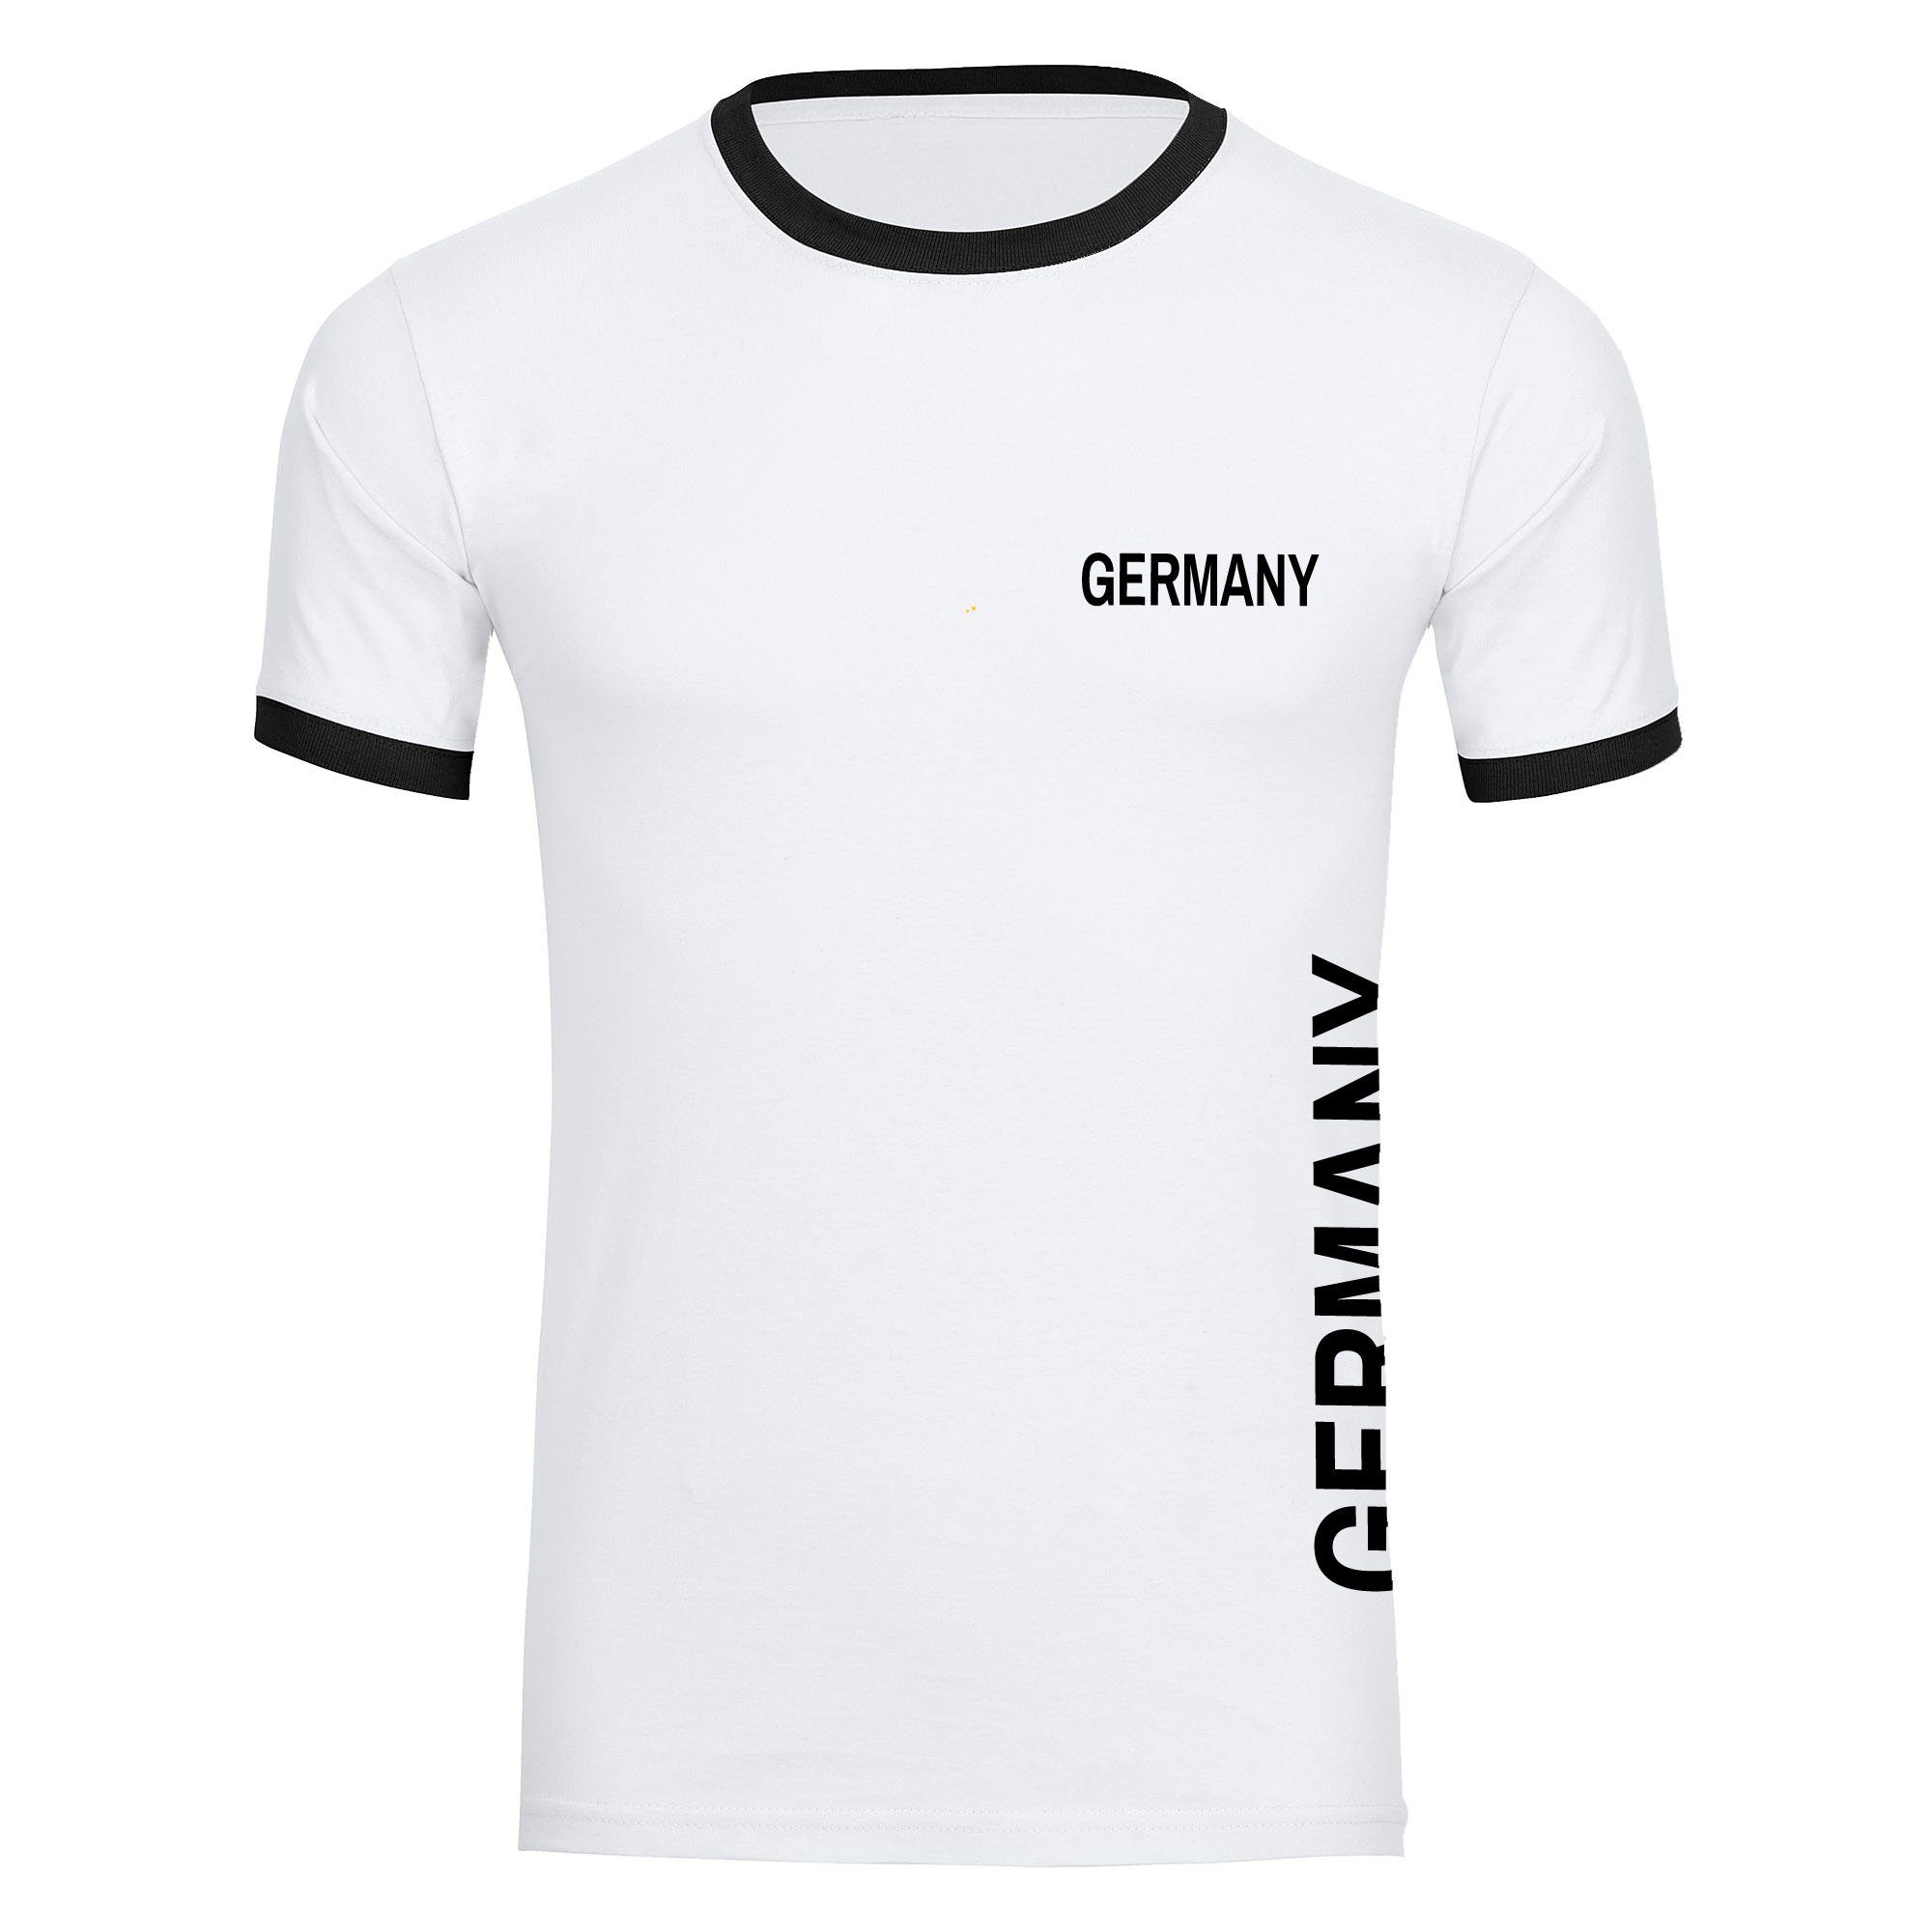 multifanshop T-Shirt Kontrast Germany - Brust & Seite - Männer